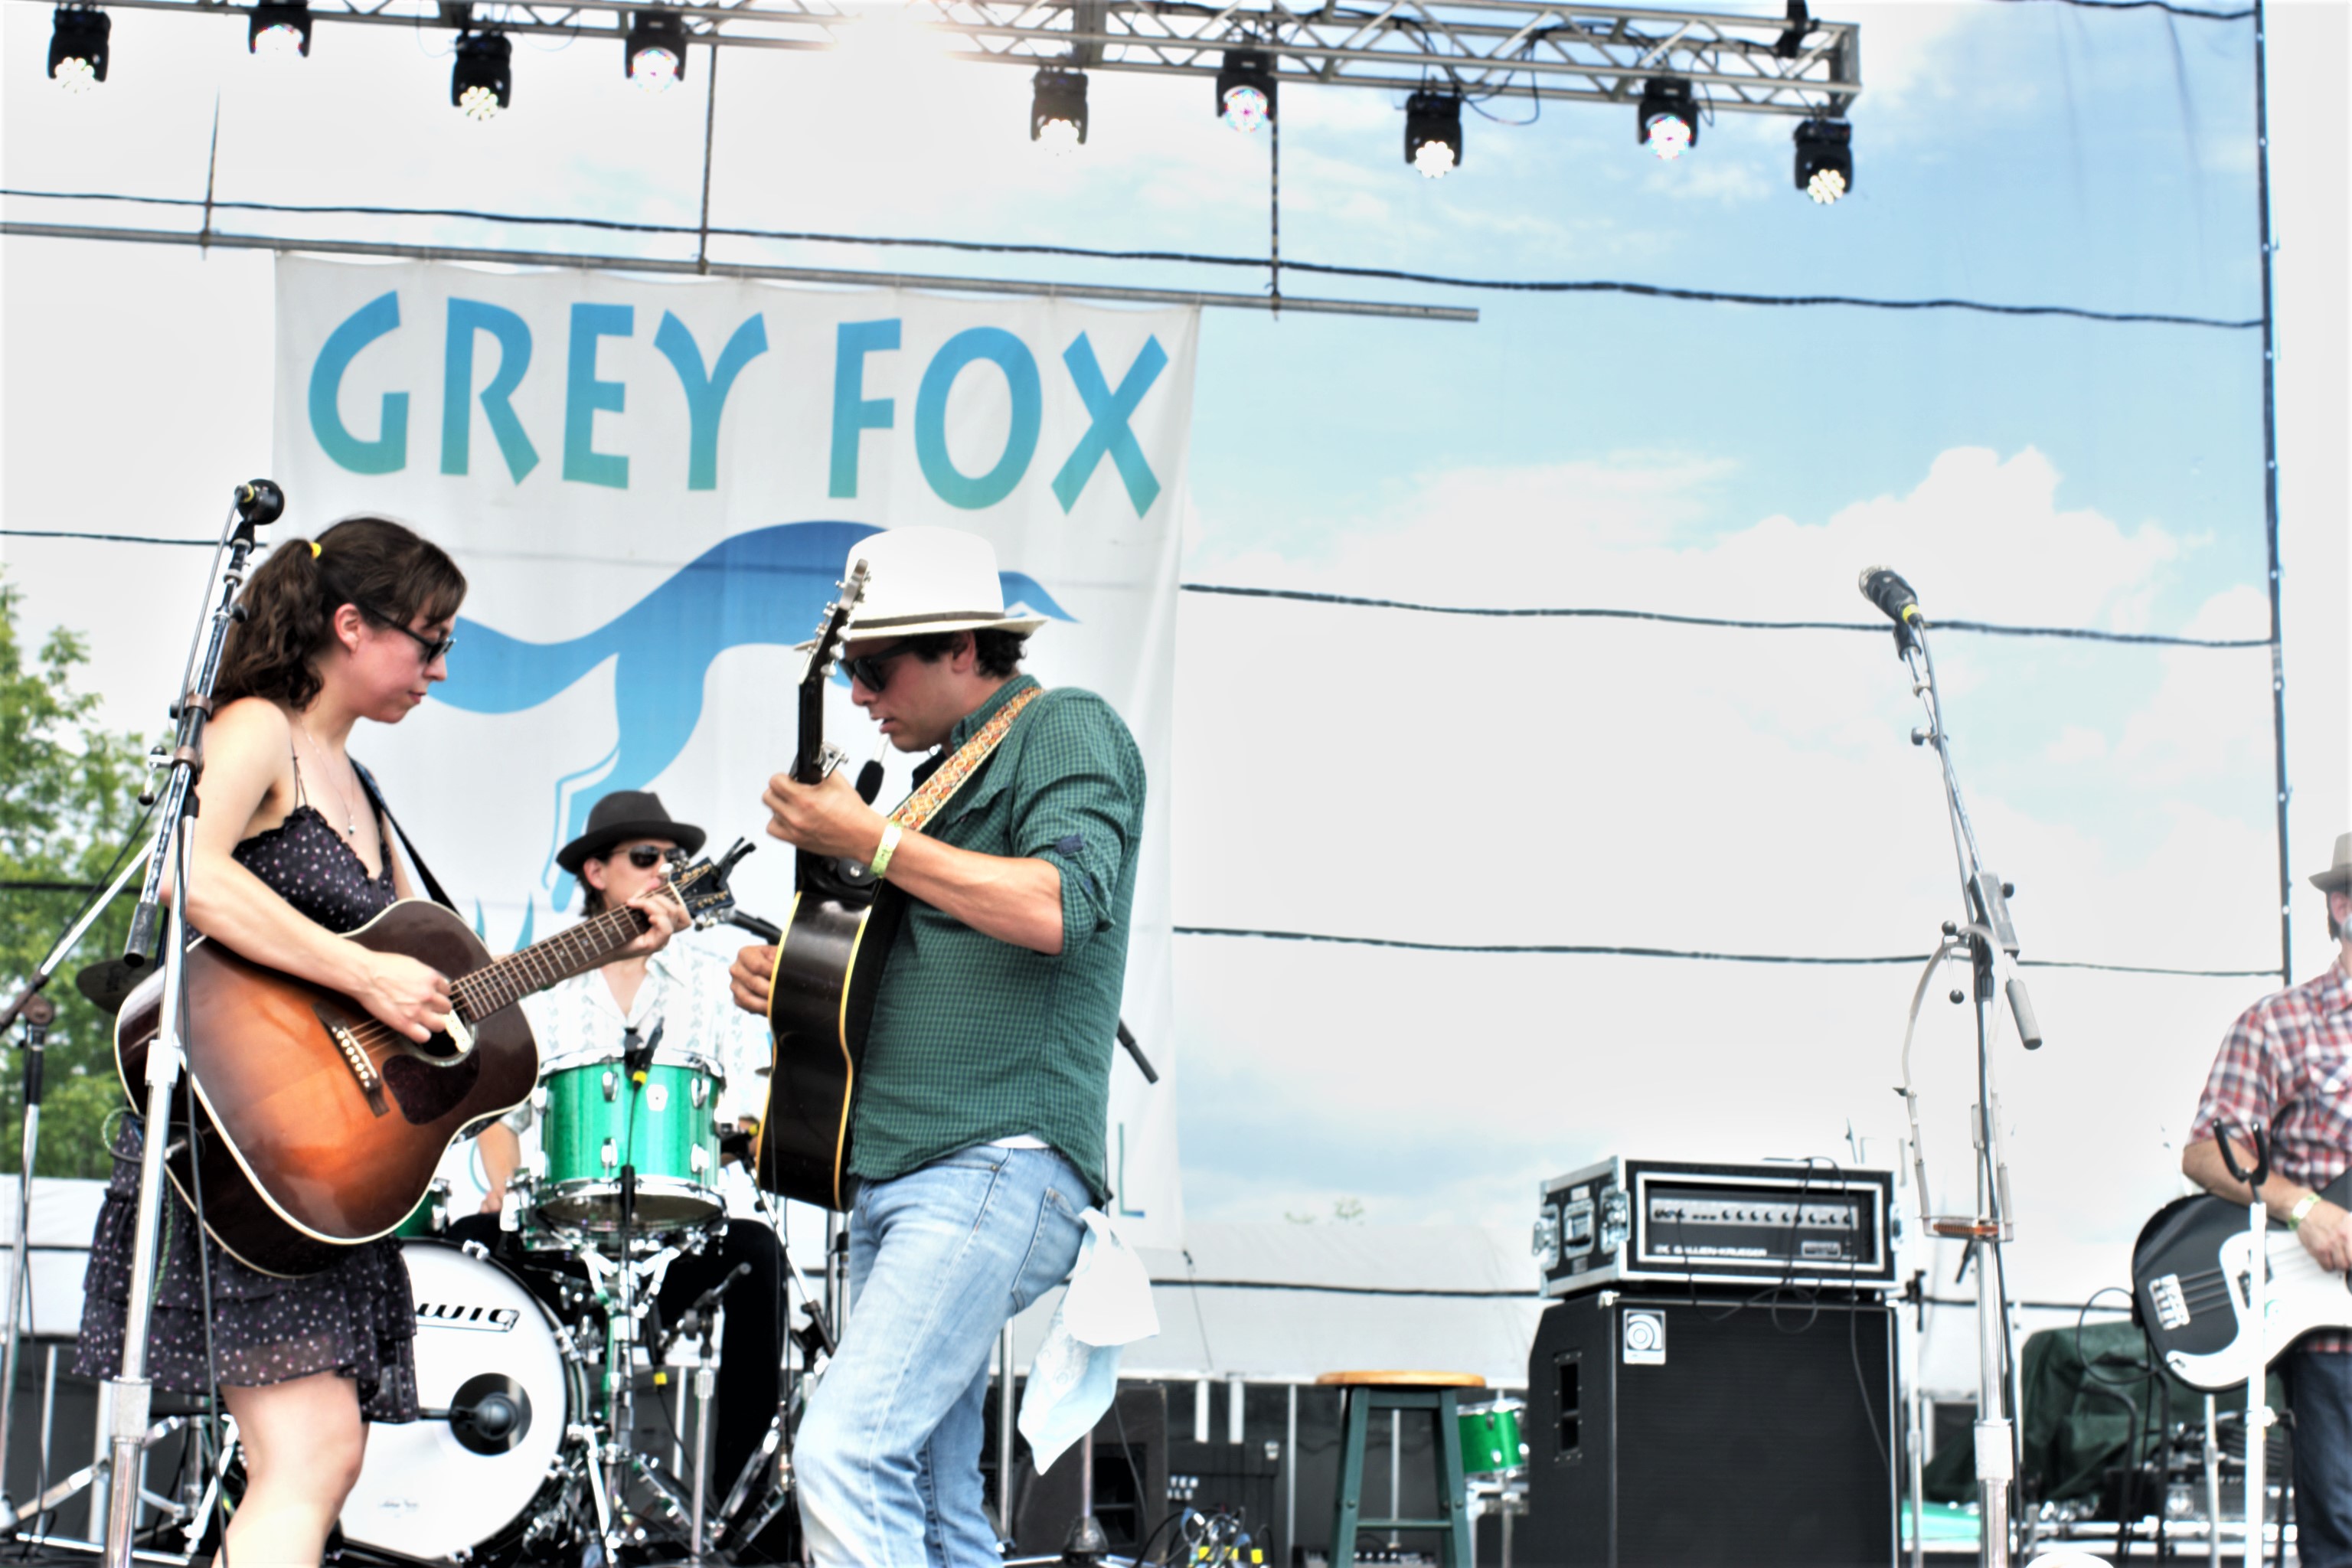 SUMMER MUSIC SPOTLIGHT: Grey Fox Bluegrass Festival